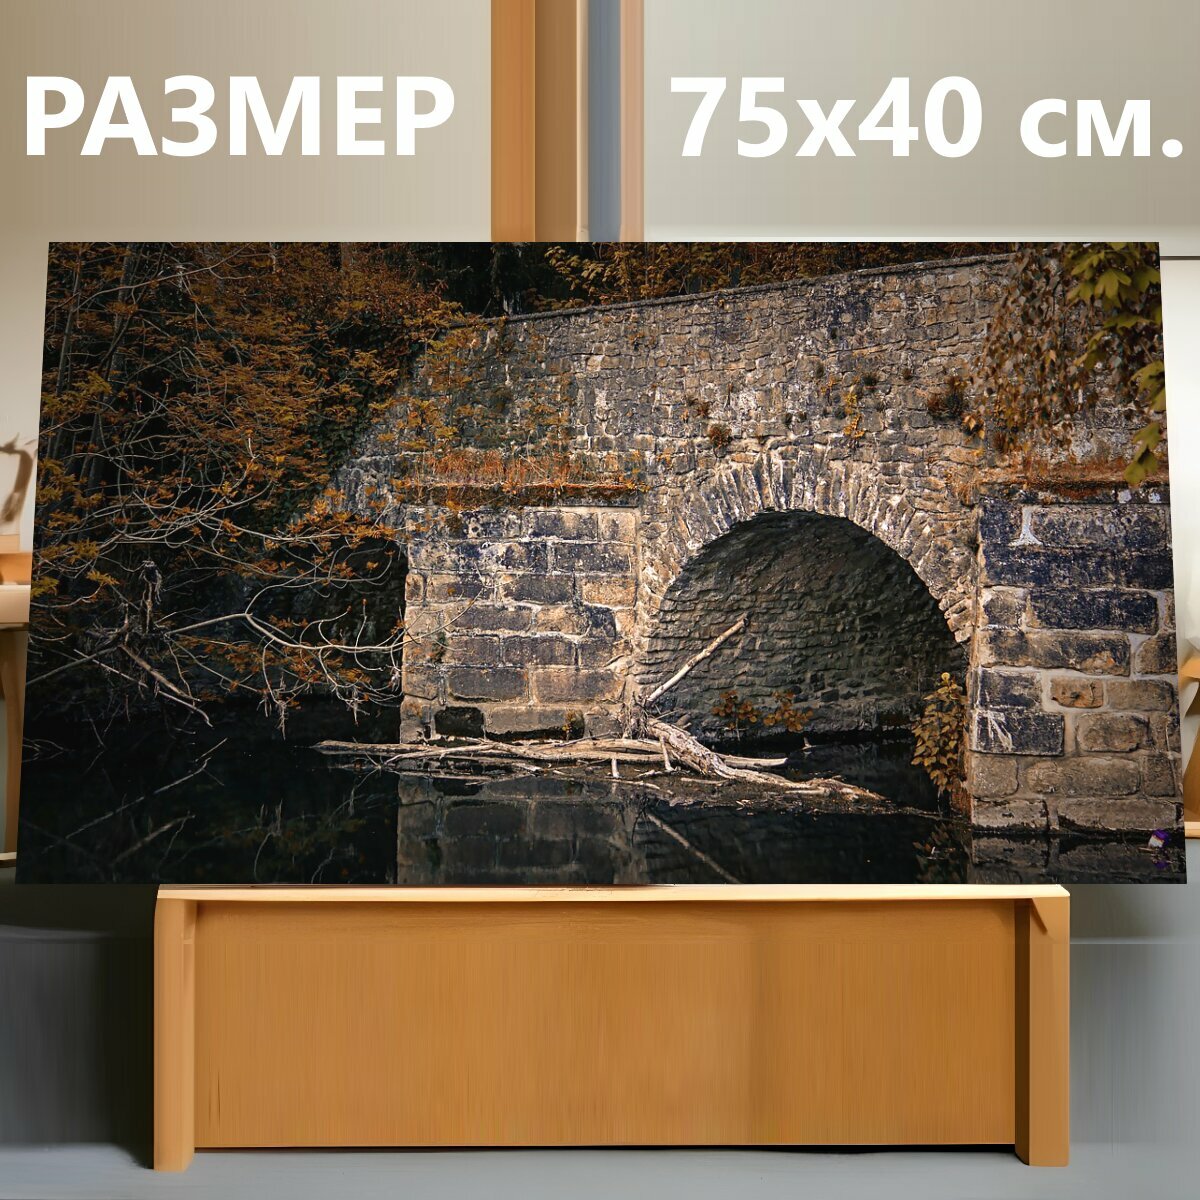 Картина на холсте "Мост, каменный мост, поток" на подрамнике 75х40 см. для интерьера